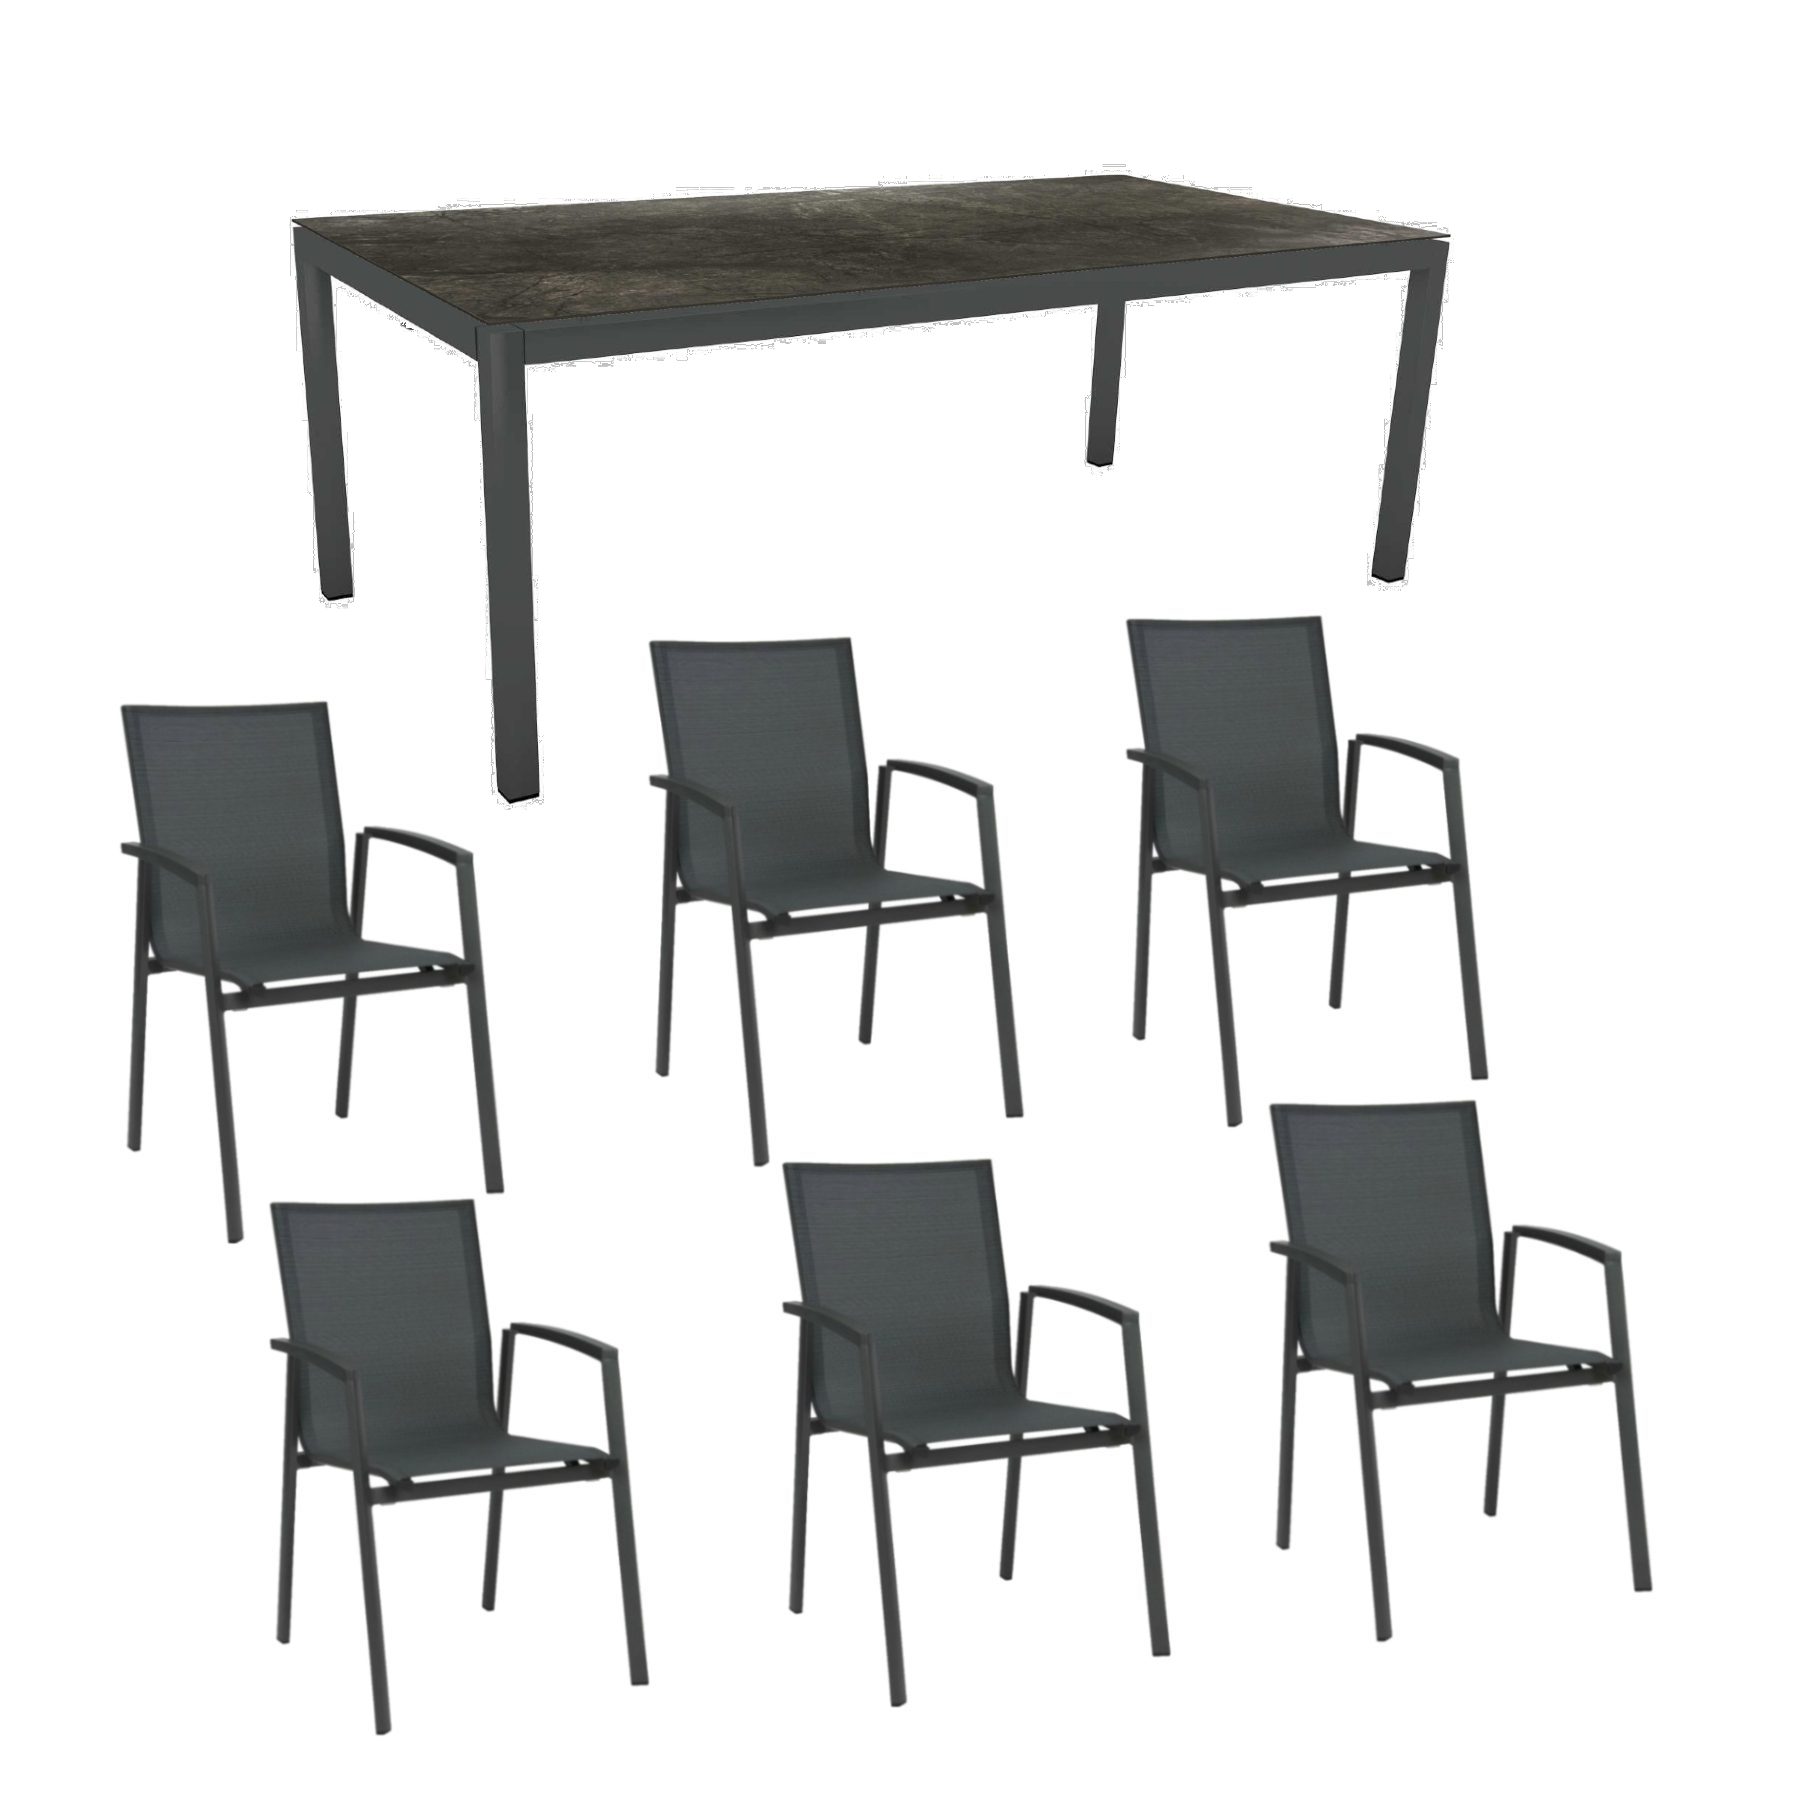 Stern Gartenmöbel-Set mit Stuhl "New Top“ und Gartentisch Aluminium/HPL, Gestelle Aluminium anthrazit, Sitz Textil karbon, Tischplatte HPL Dark Marble